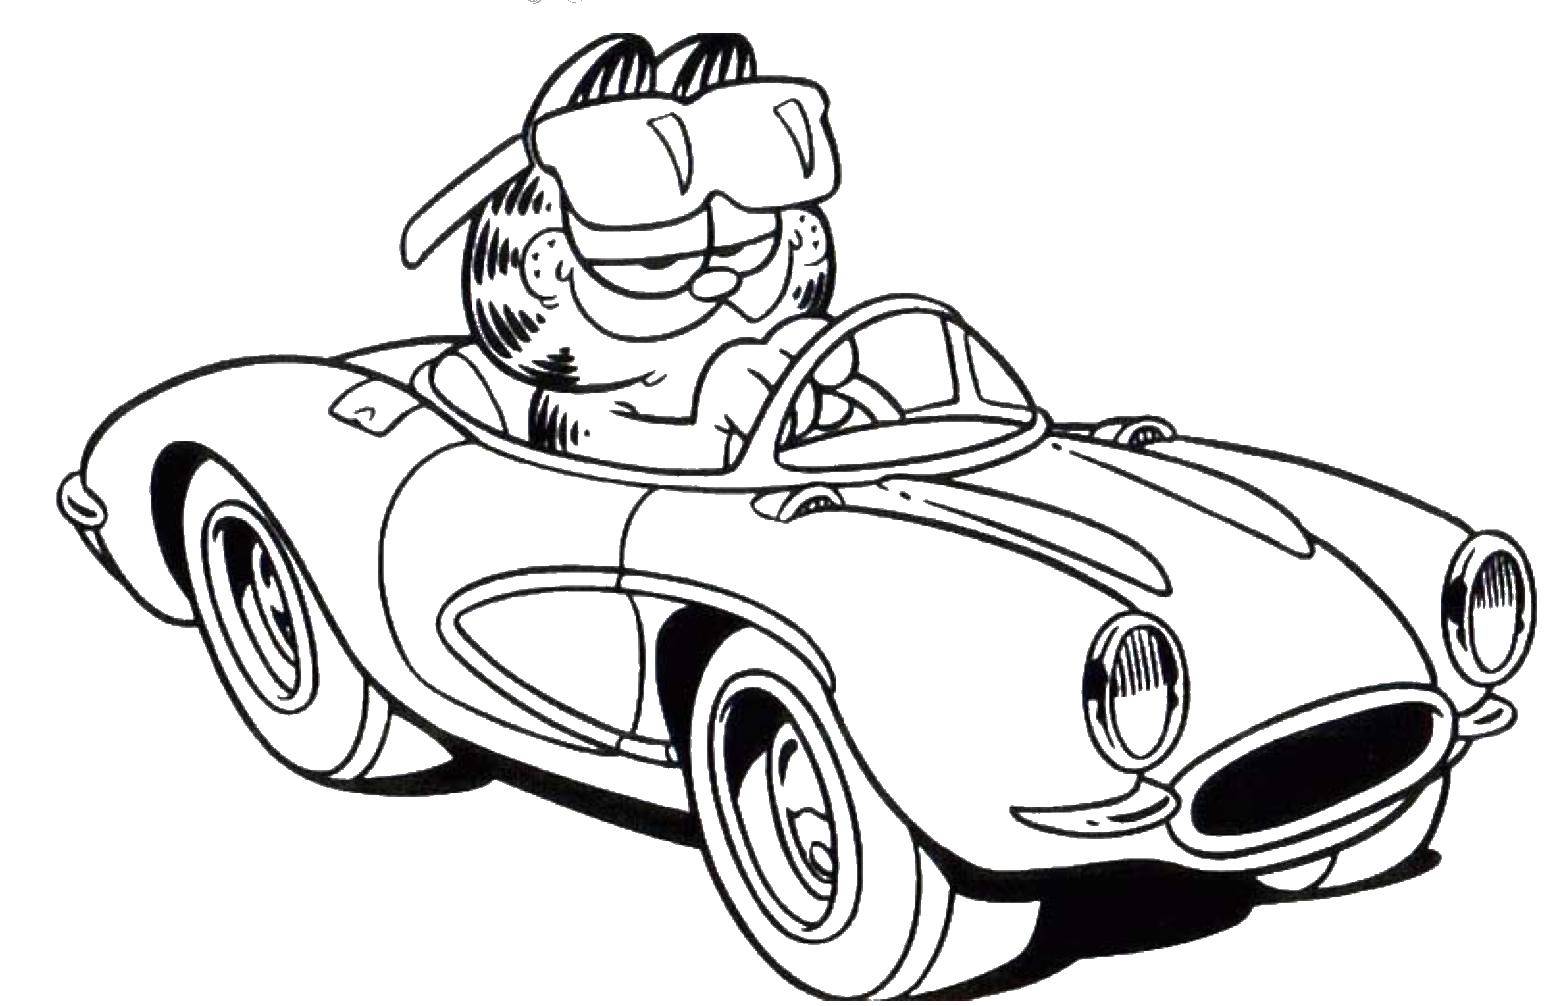 Раскраски про приключения кота Гарфилда для детей  Гарфилд едет на машине